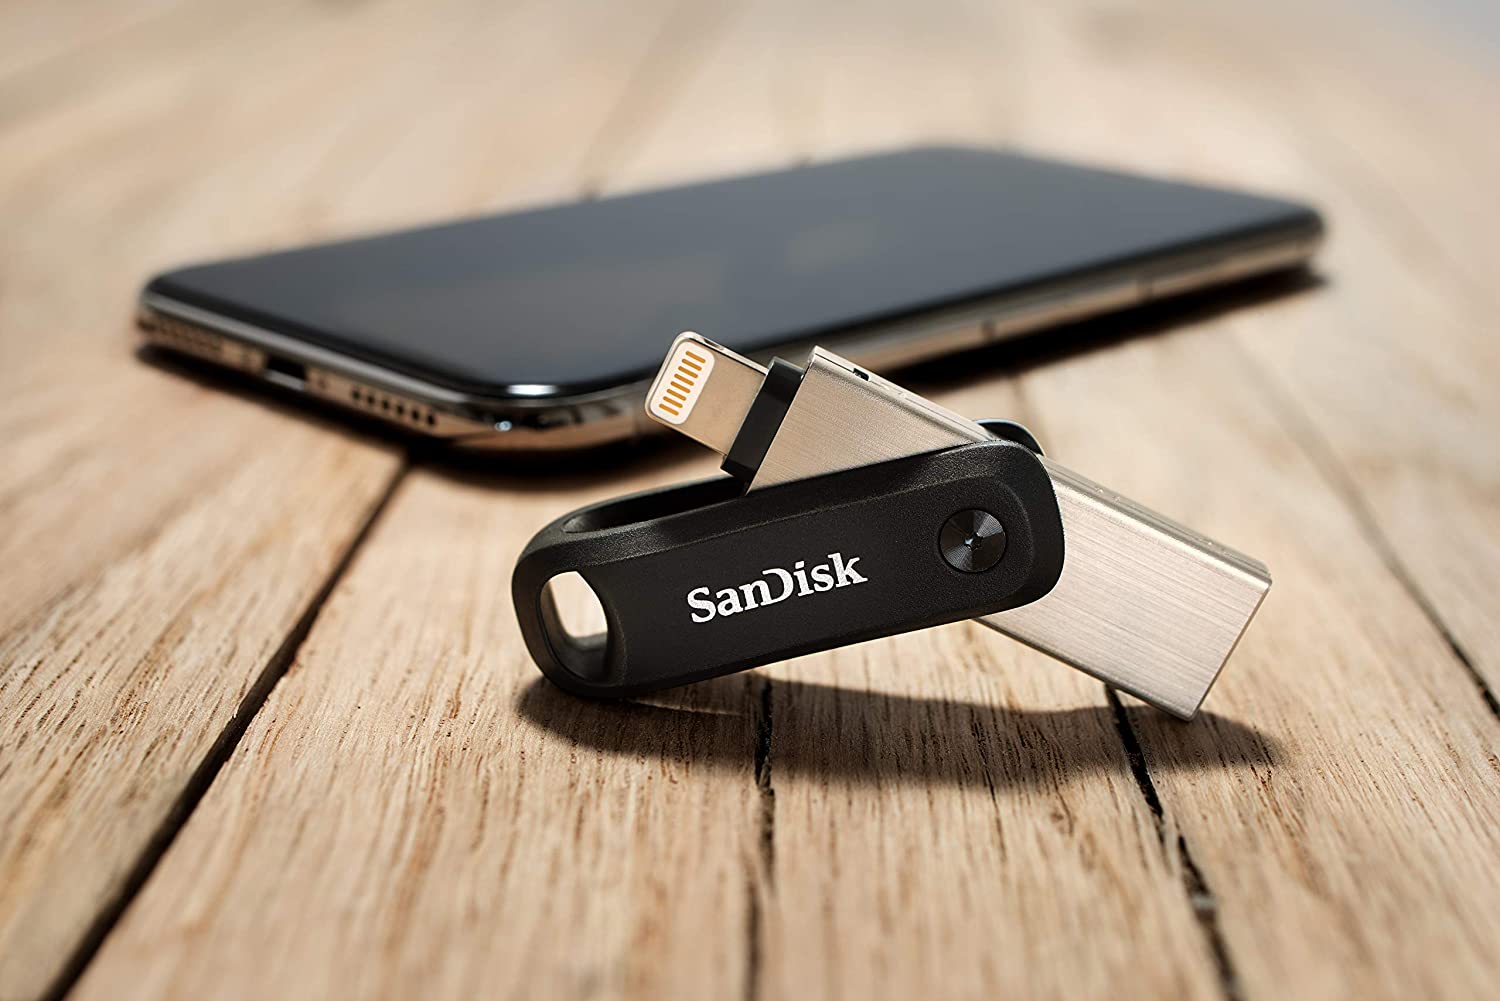 Recensione SanDisk iXpand Go, spazio aggiuntivo per iPhone e iPad senza problemi